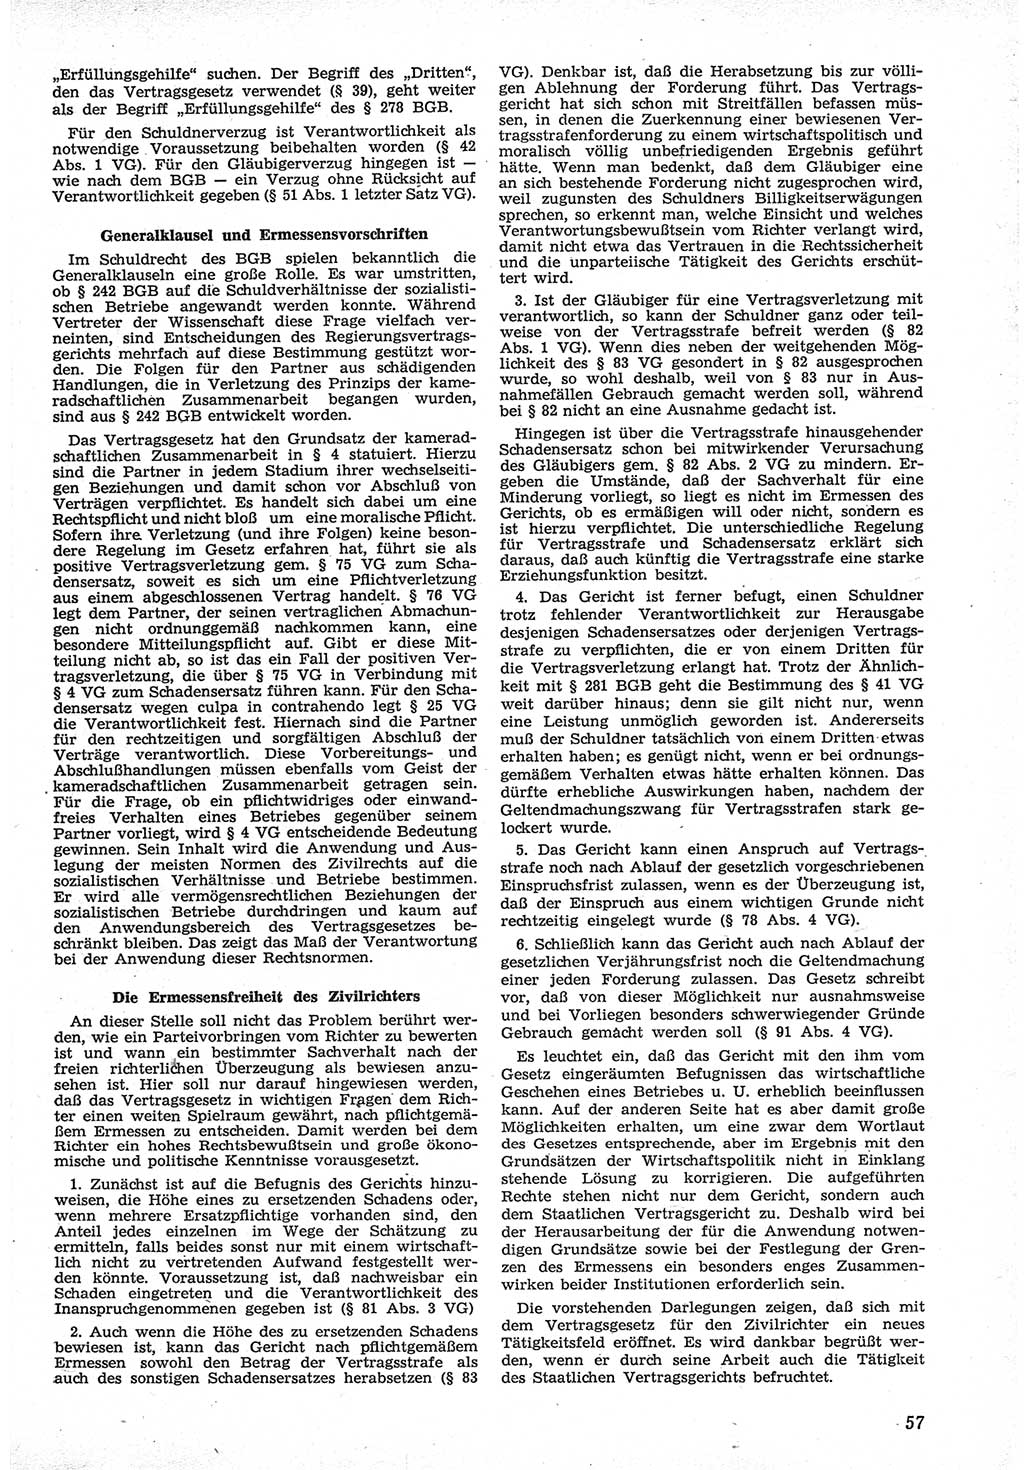 Neue Justiz (NJ), Zeitschrift für Recht und Rechtswissenschaft [Deutsche Demokratische Republik (DDR)], 12. Jahrgang 1958, Seite 57 (NJ DDR 1958, S. 57)